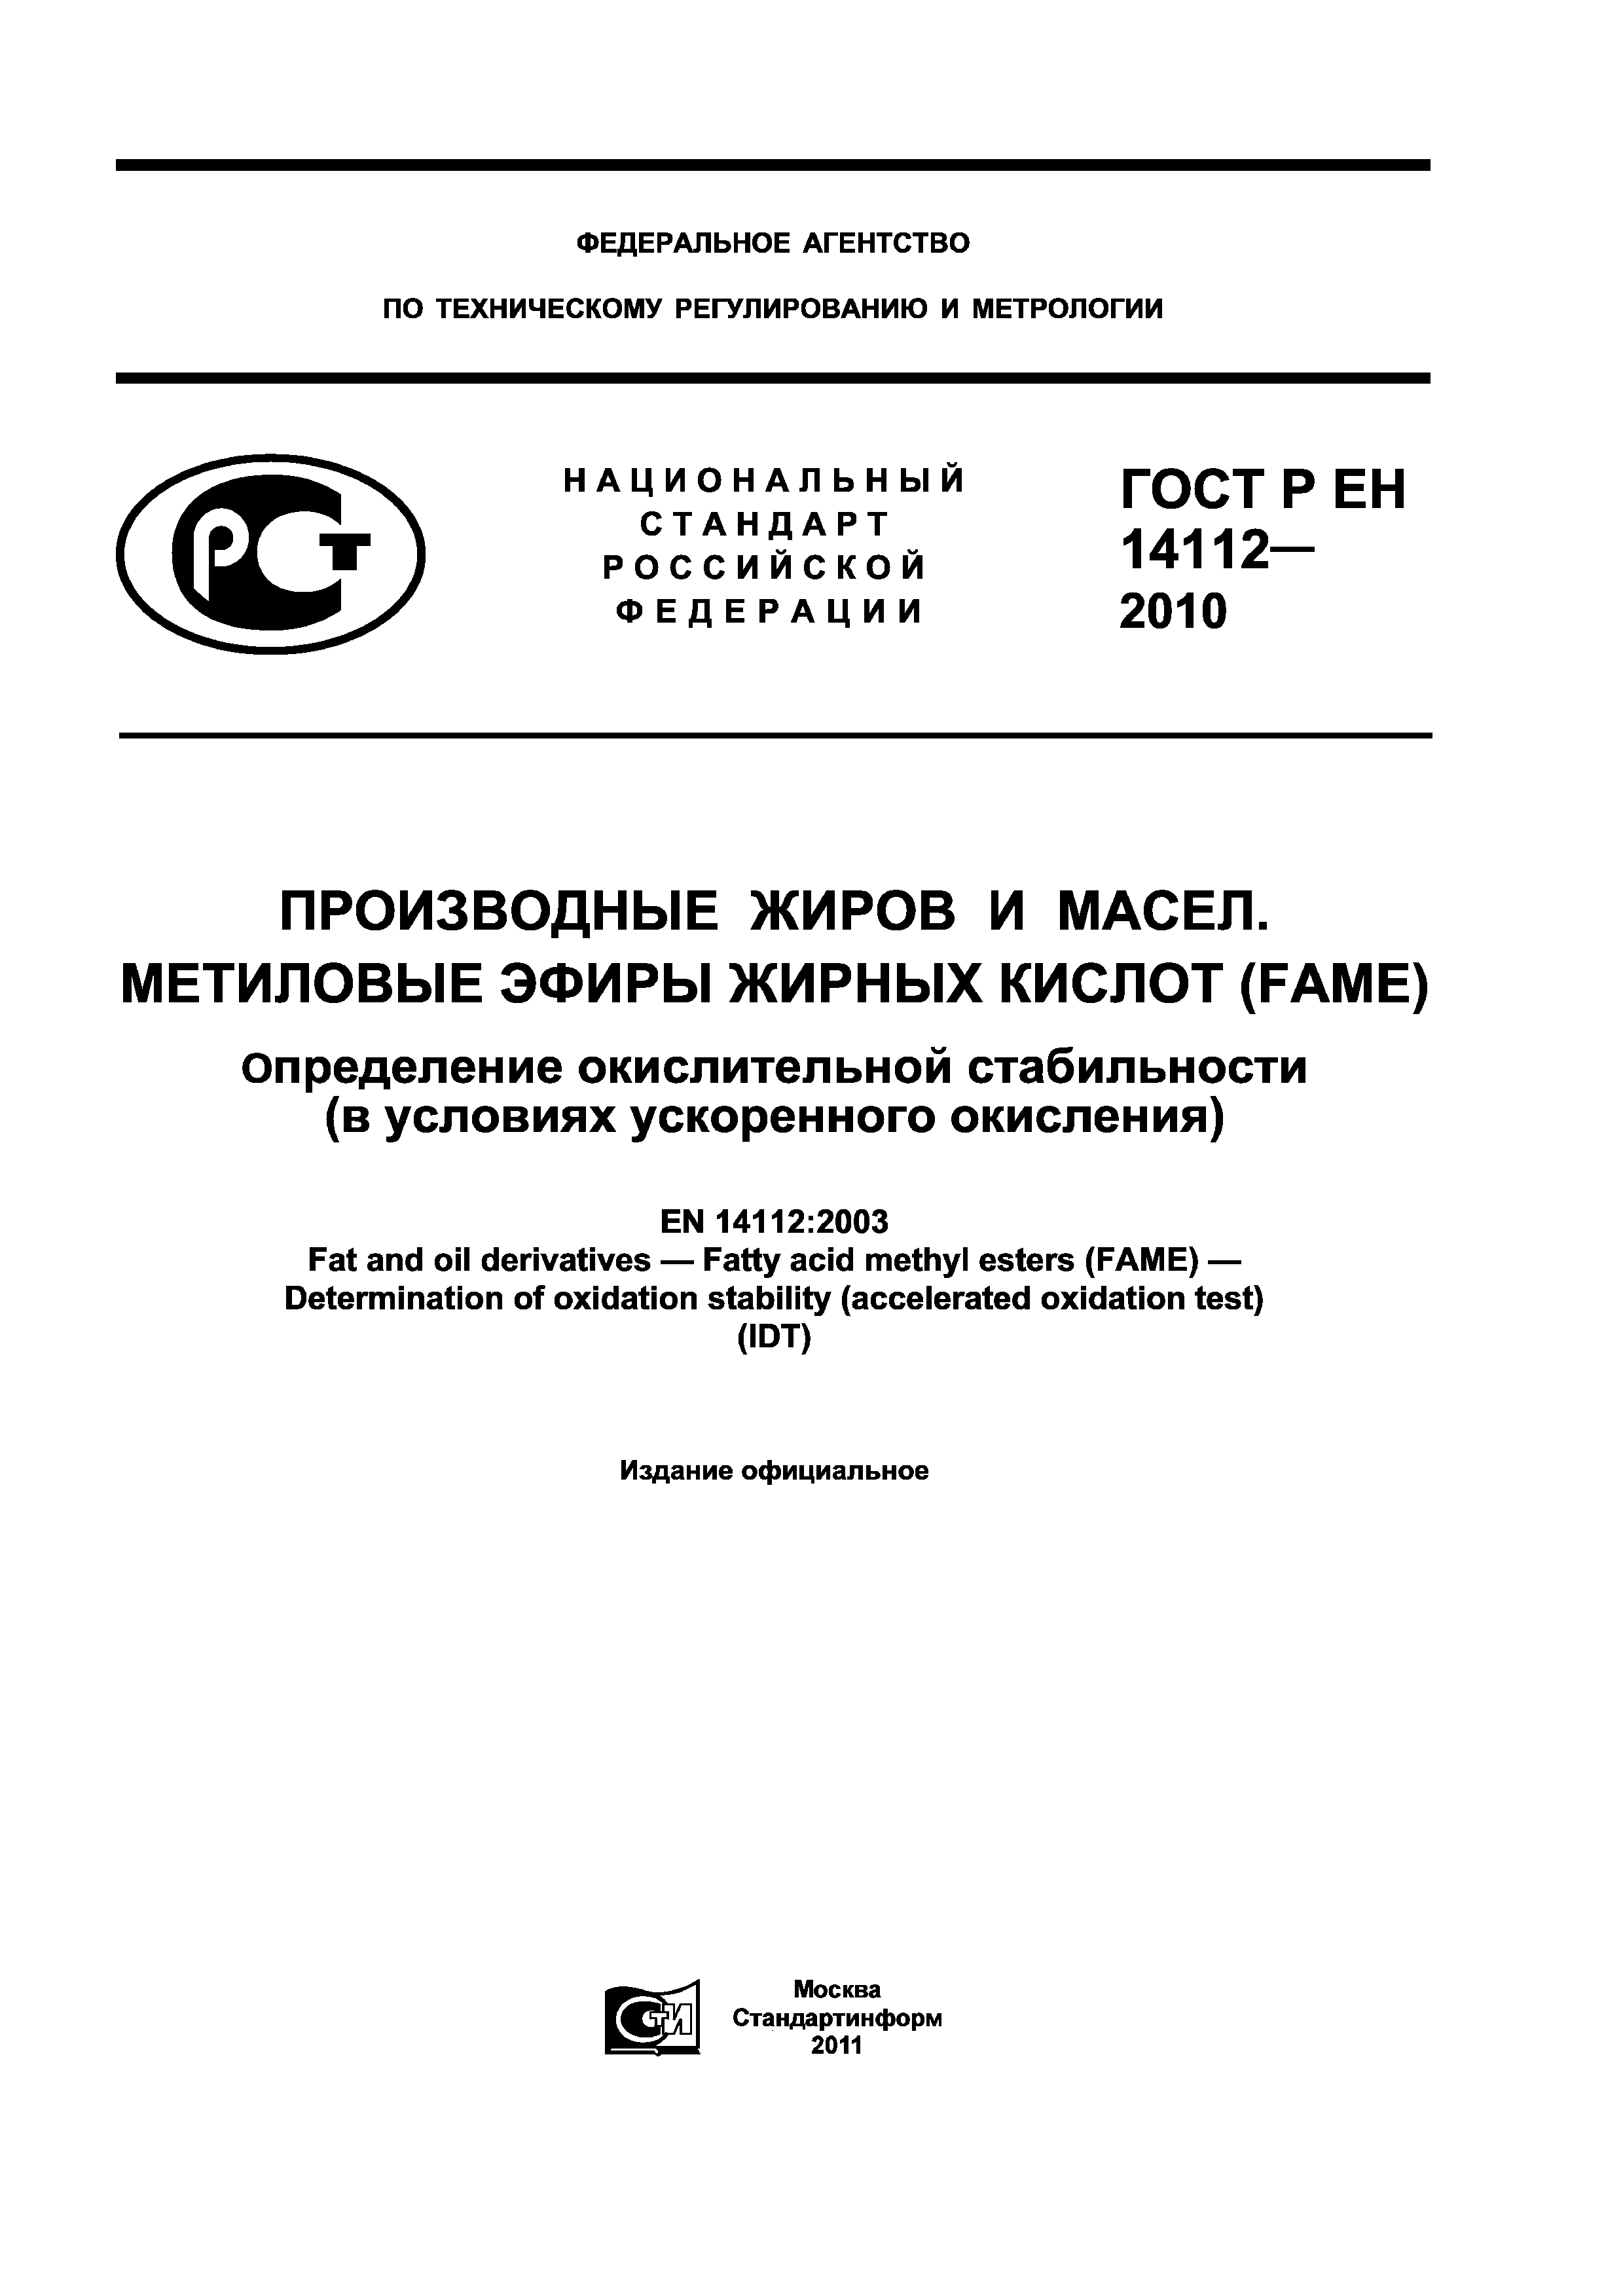 ГОСТ Р ЕН 14112-2010